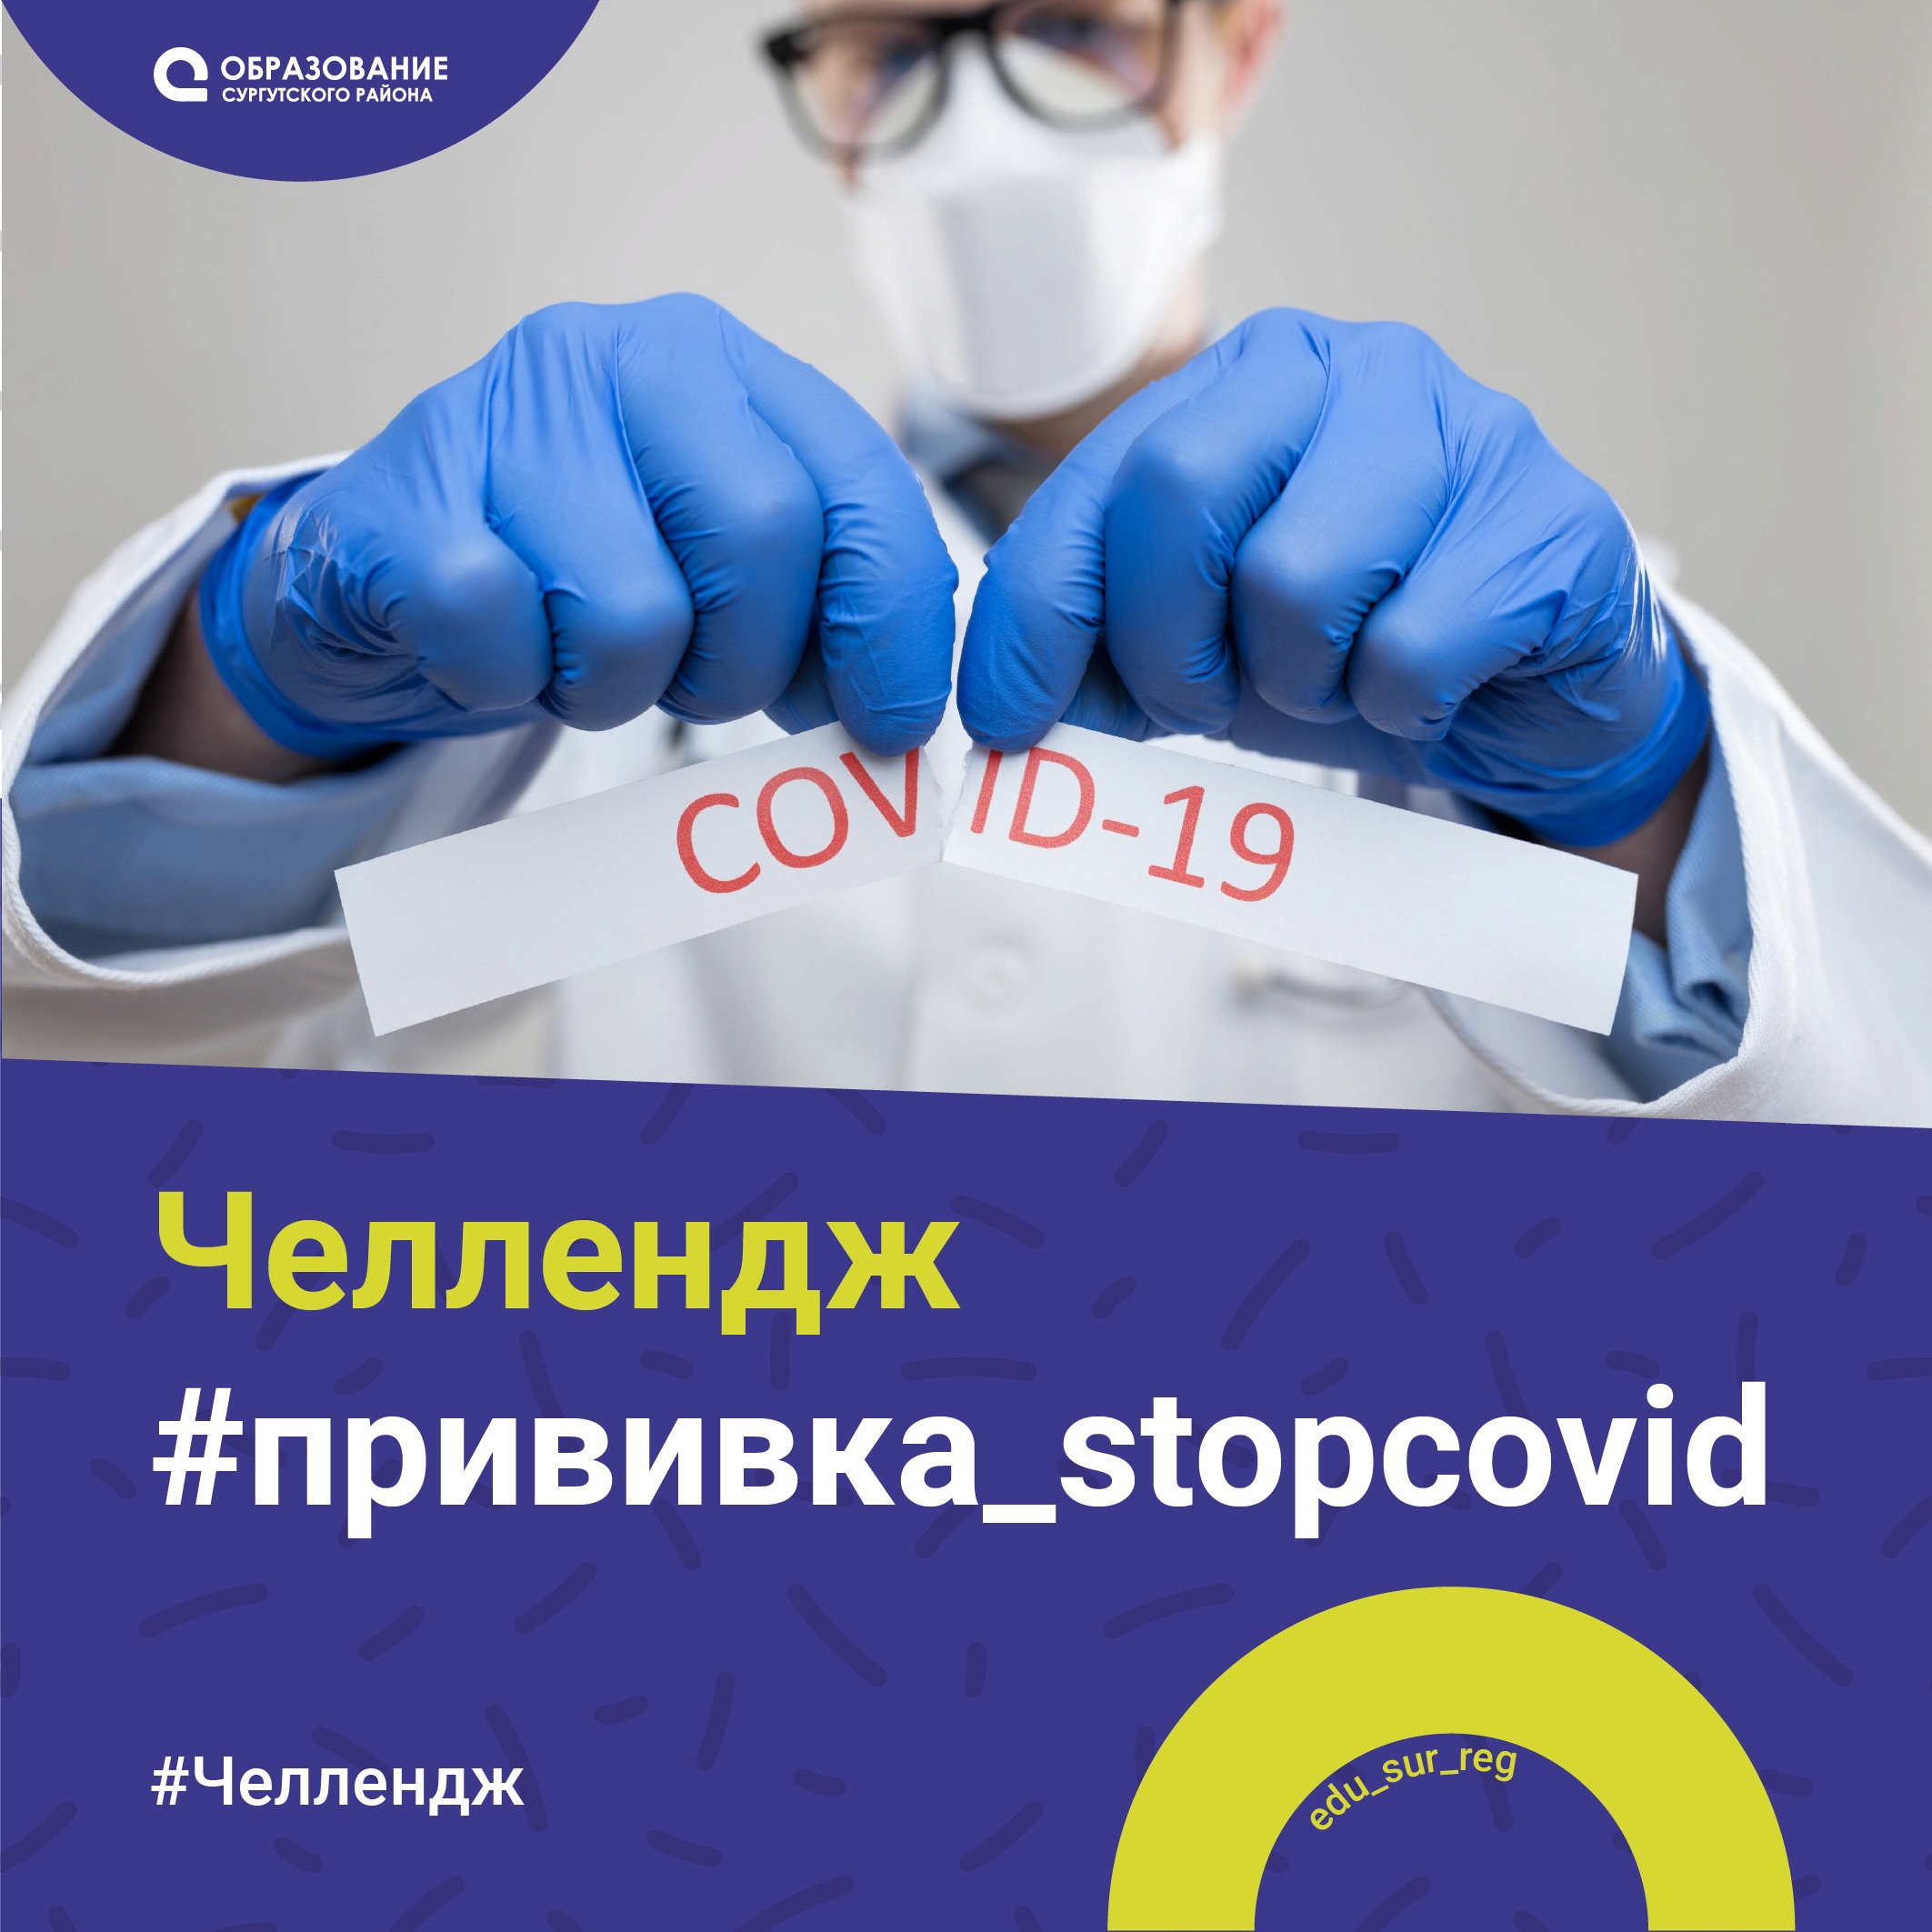 Прими участие в челлендже #прививка_stopcovid